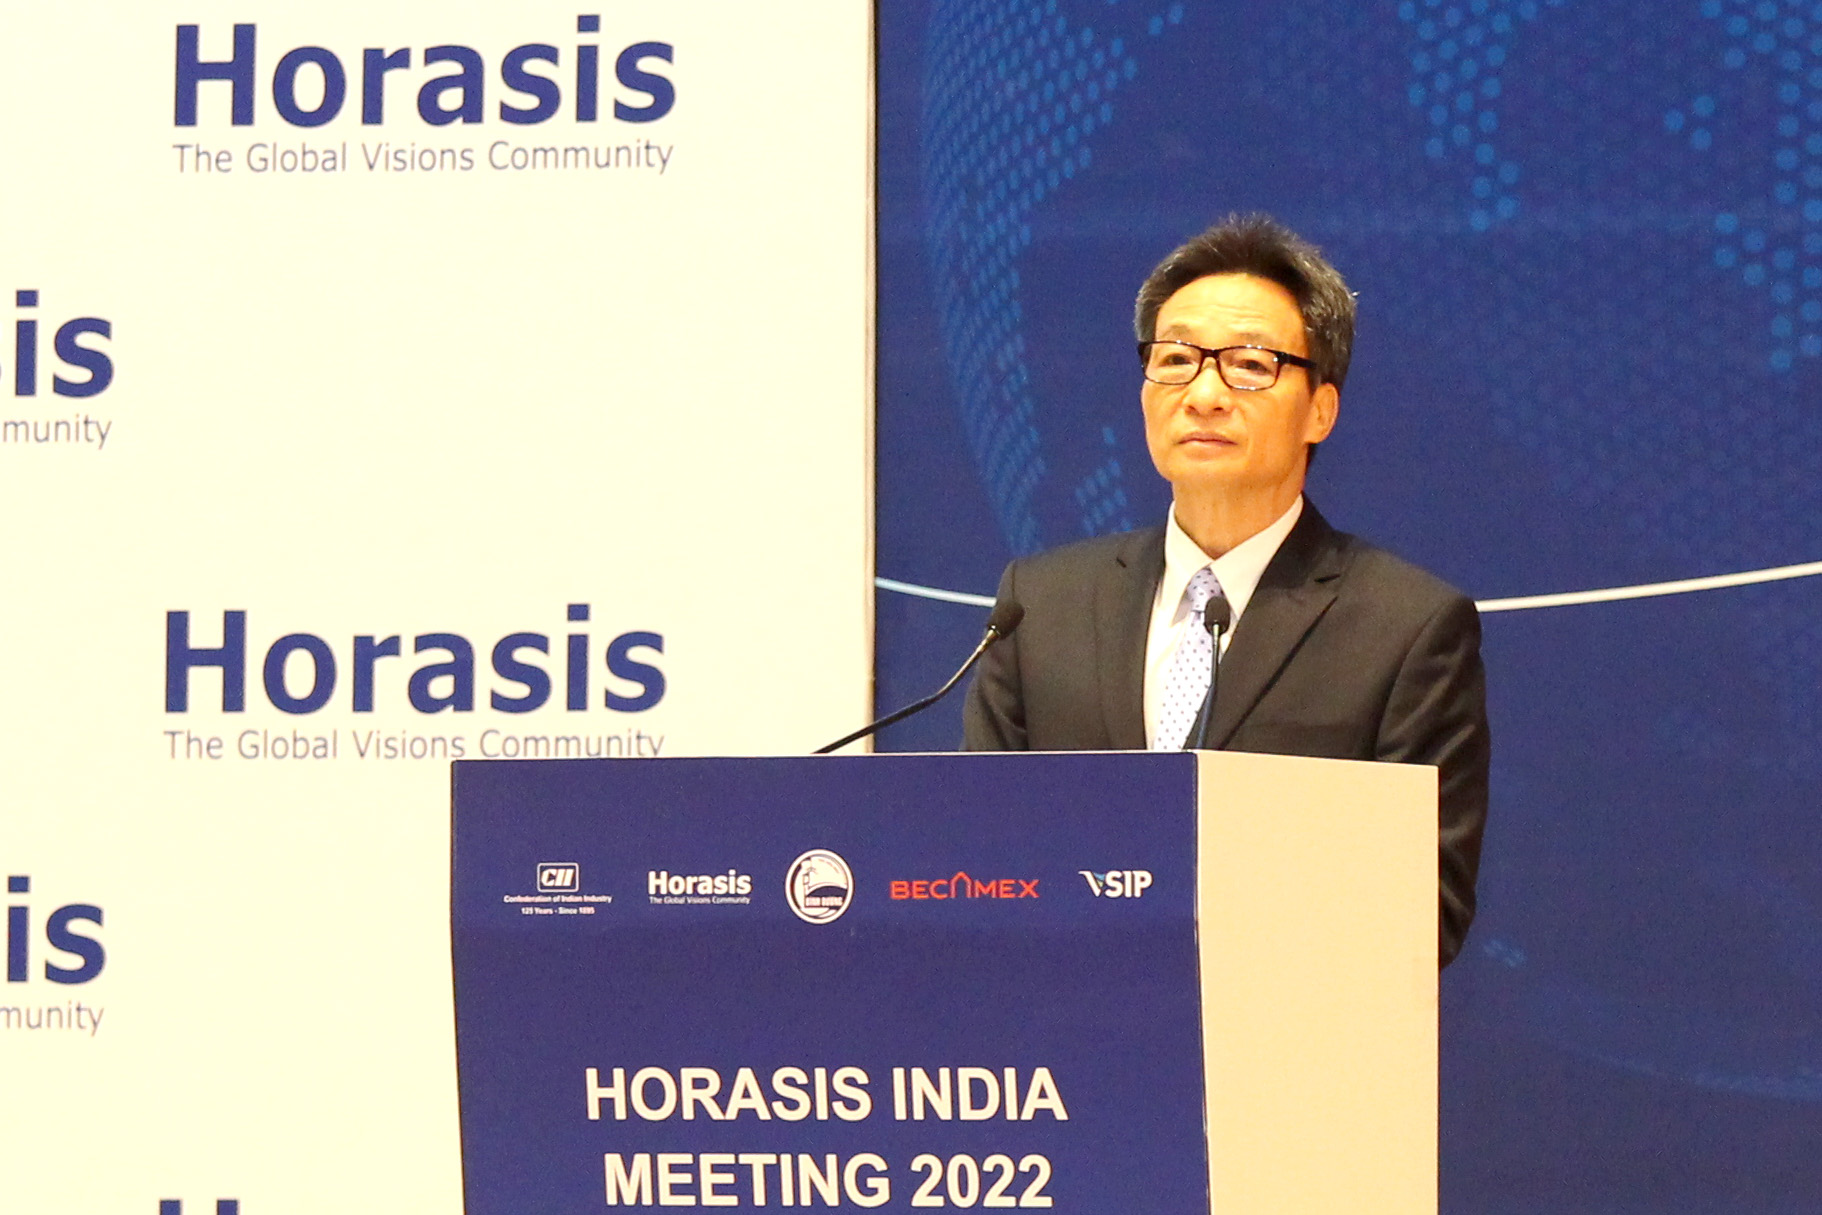 Phó Thủ tướng Vũ Đức Đam phát biểu tại Diễn đàn Hợp tác Kinh tế Ấn Độ Horasis năm 2022 (Ảnh H.Hào)